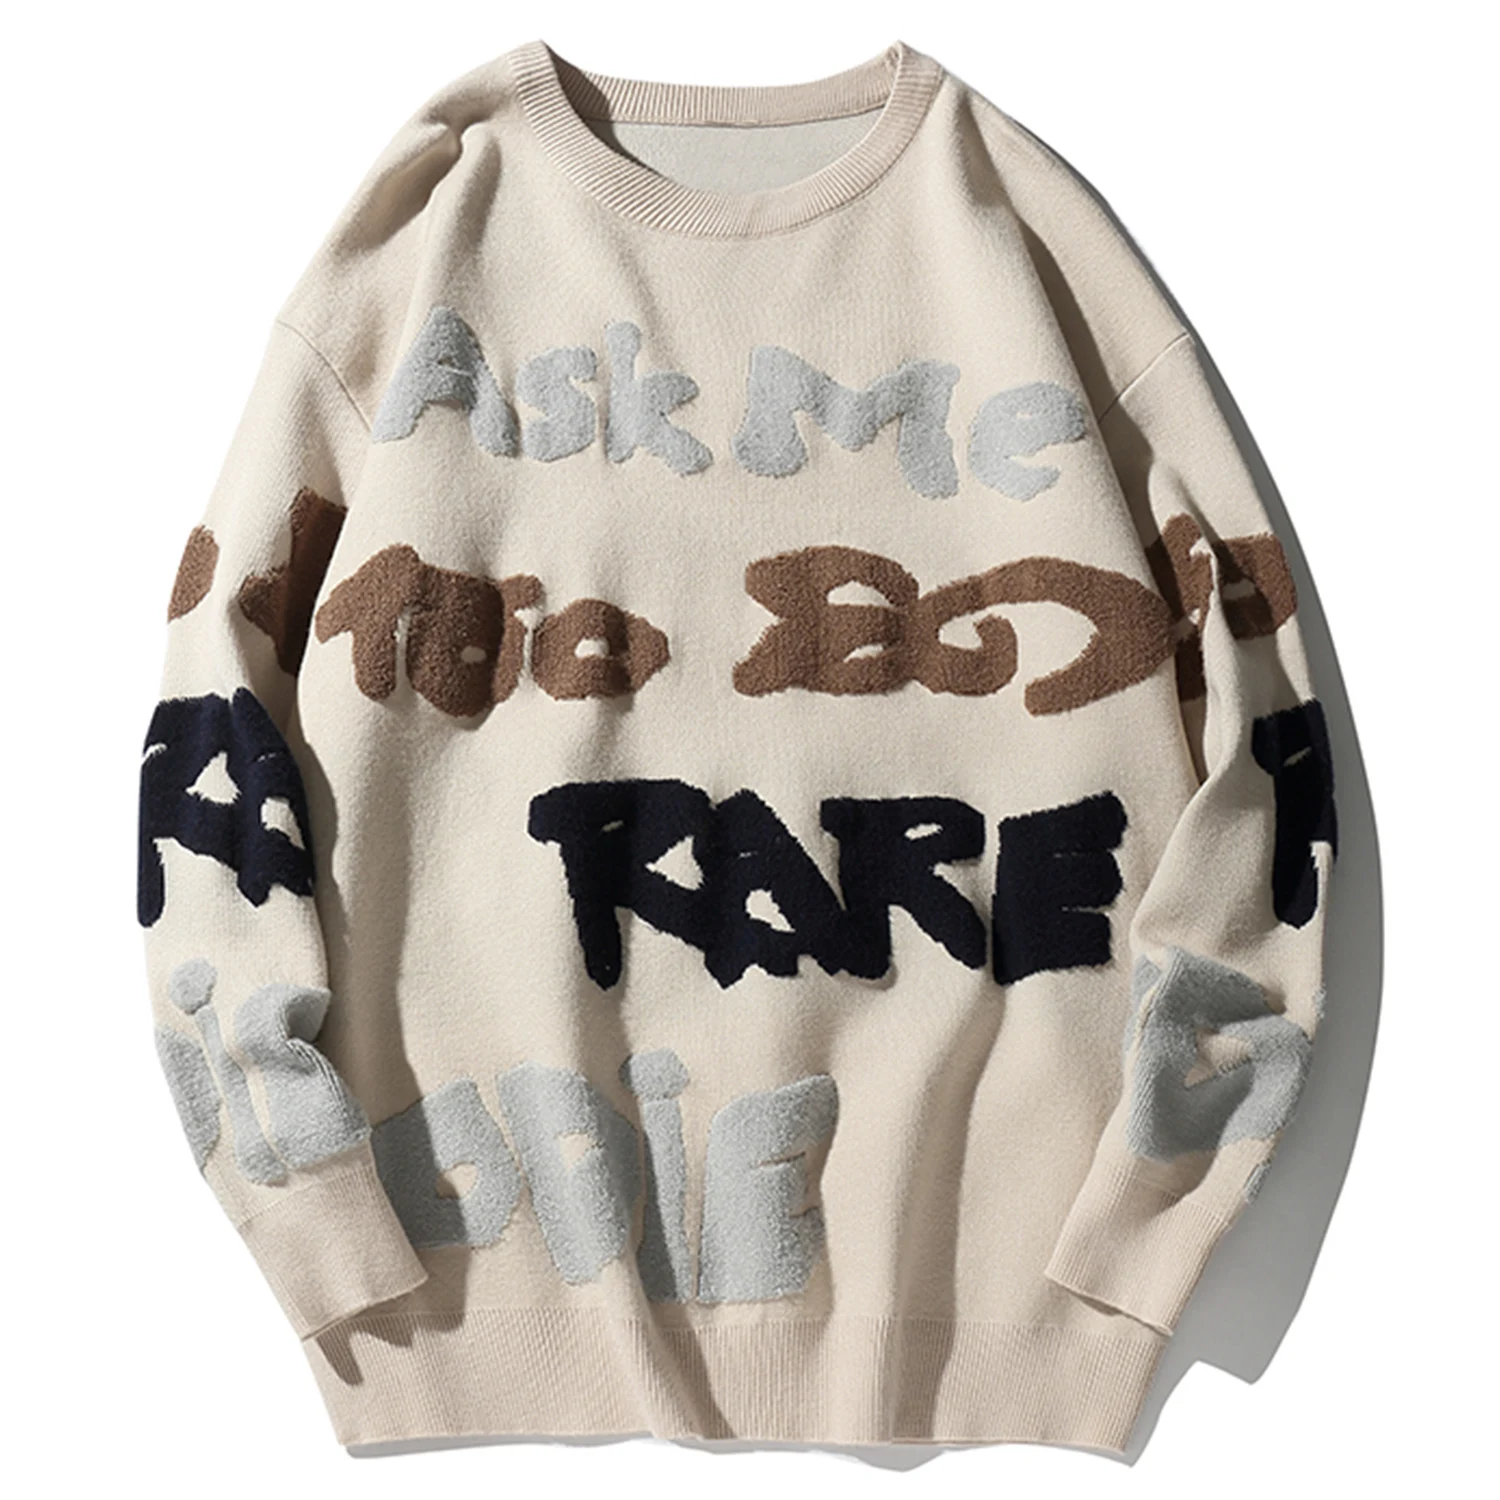 Aelfric Eden модный мужской свитер с буквенным принтом осень Harajuku хип хоп топы оверсайз Повседневная Уличная одежда пуловер верхняя одежда